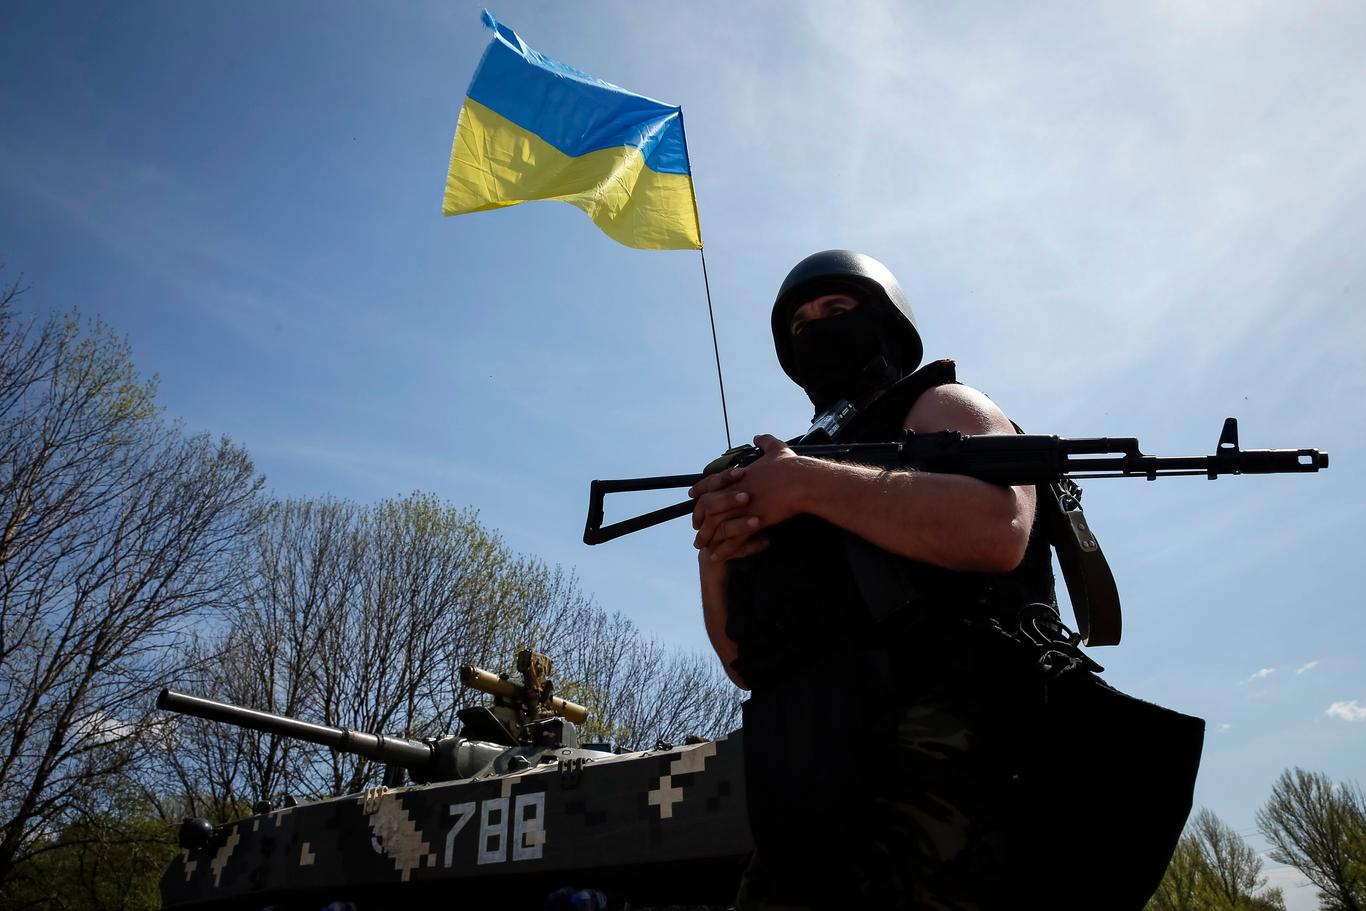 Іноземці отримали дозвіл служити у Збройних силах України